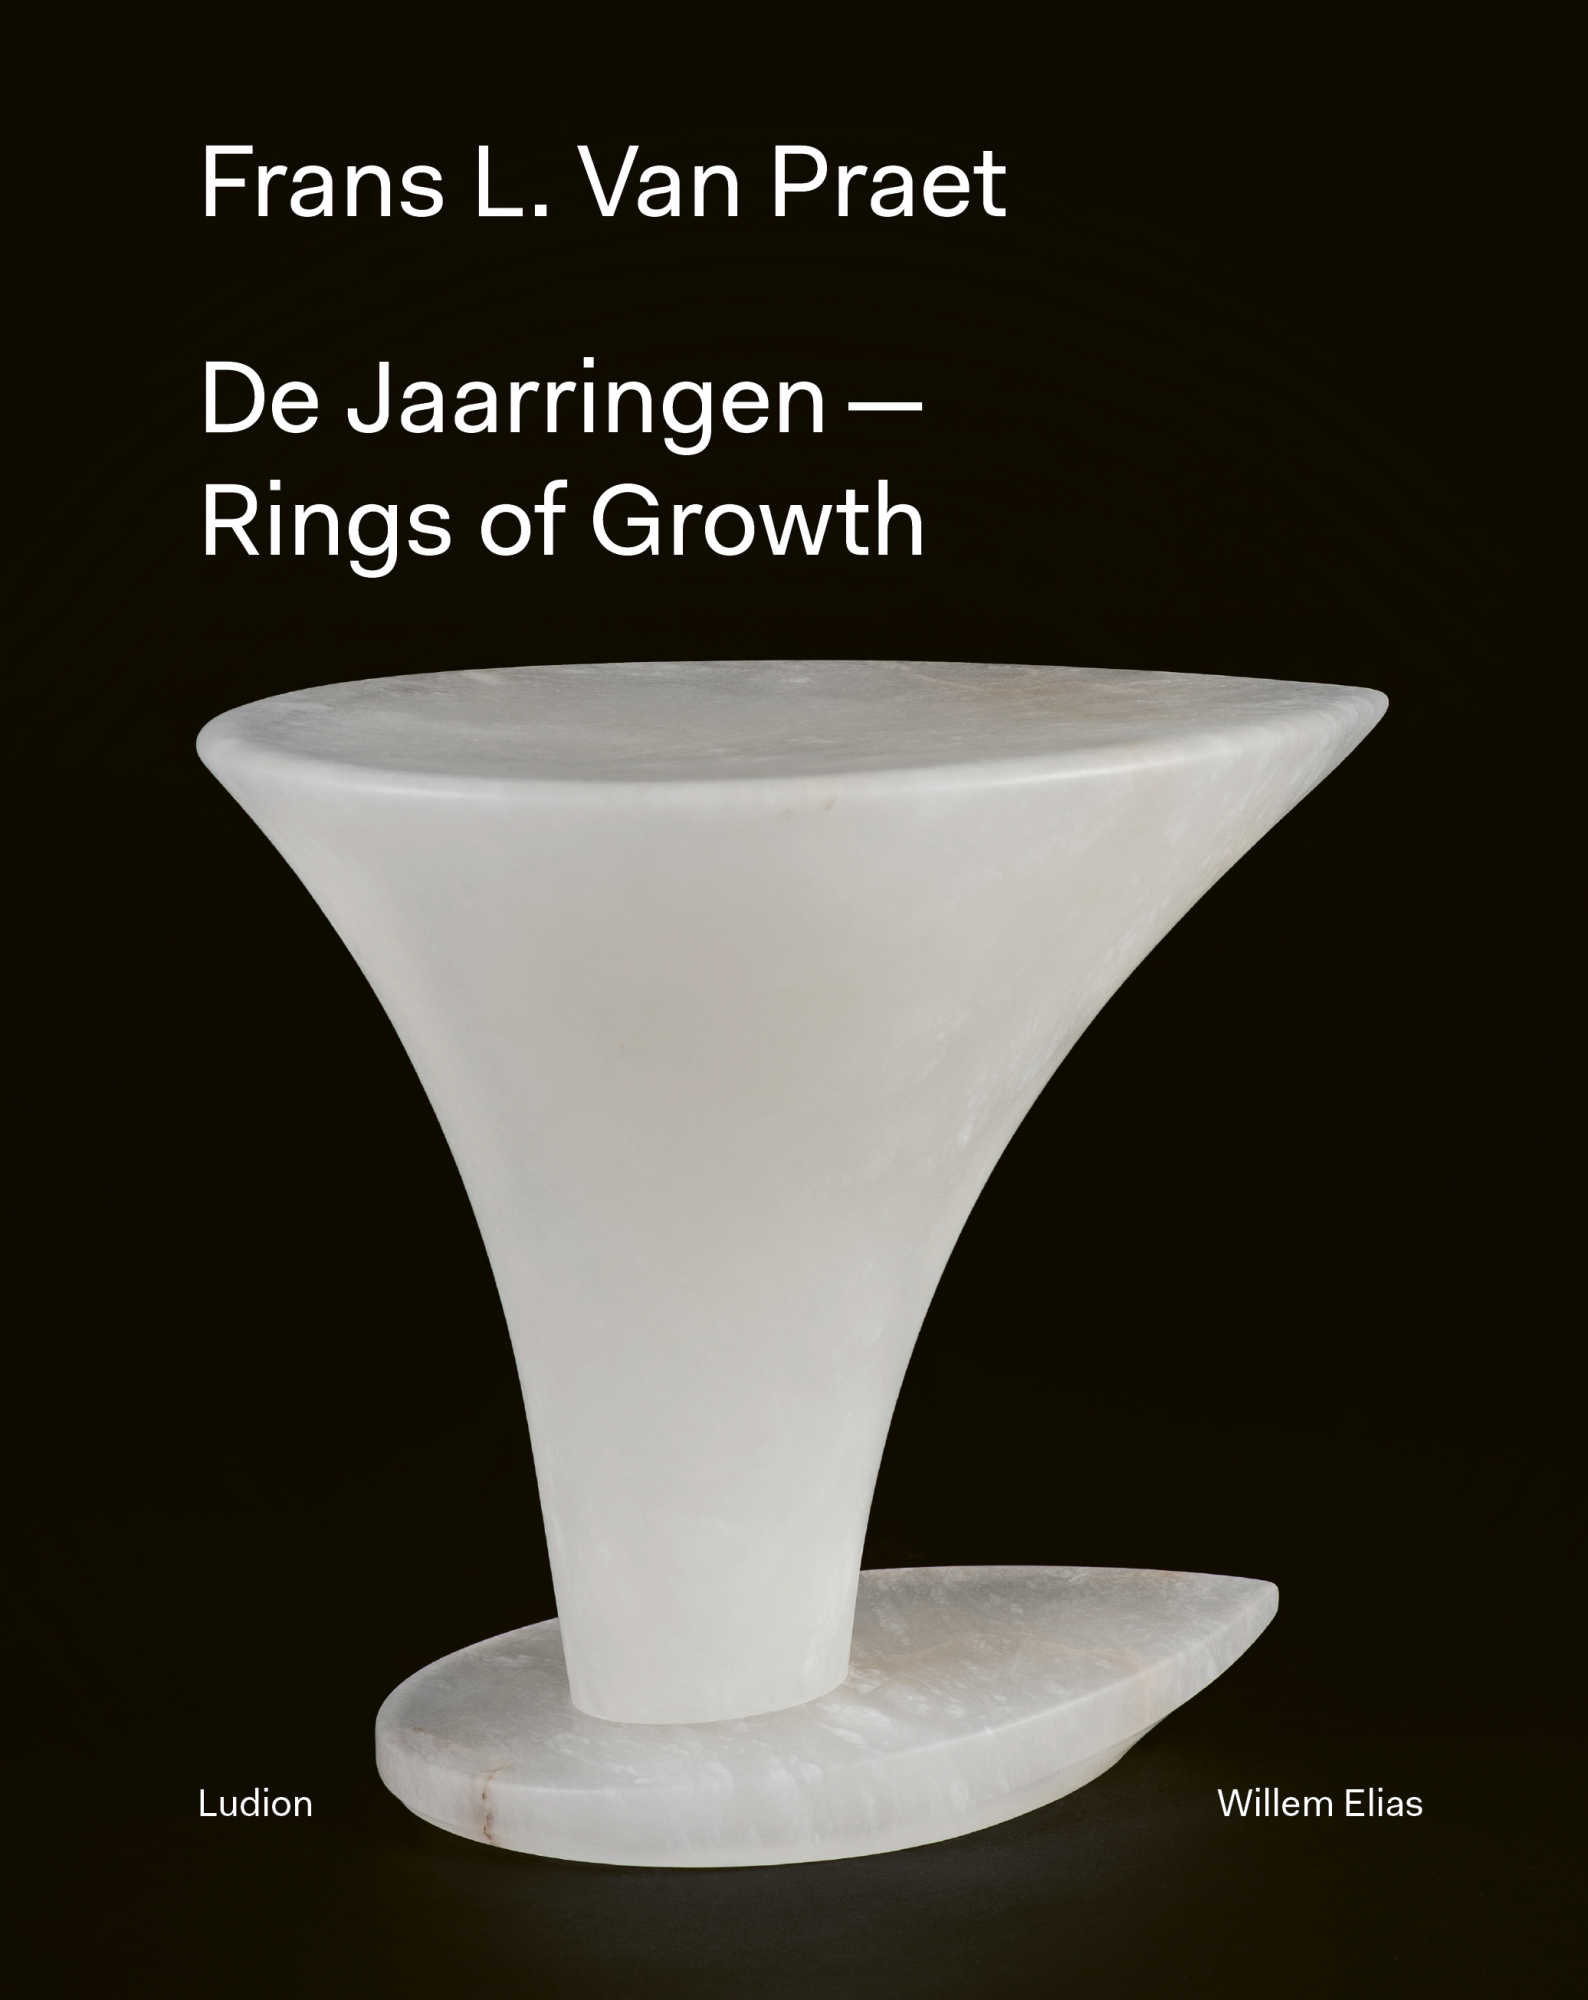 Frans L. Van Praet, Rings of Growth